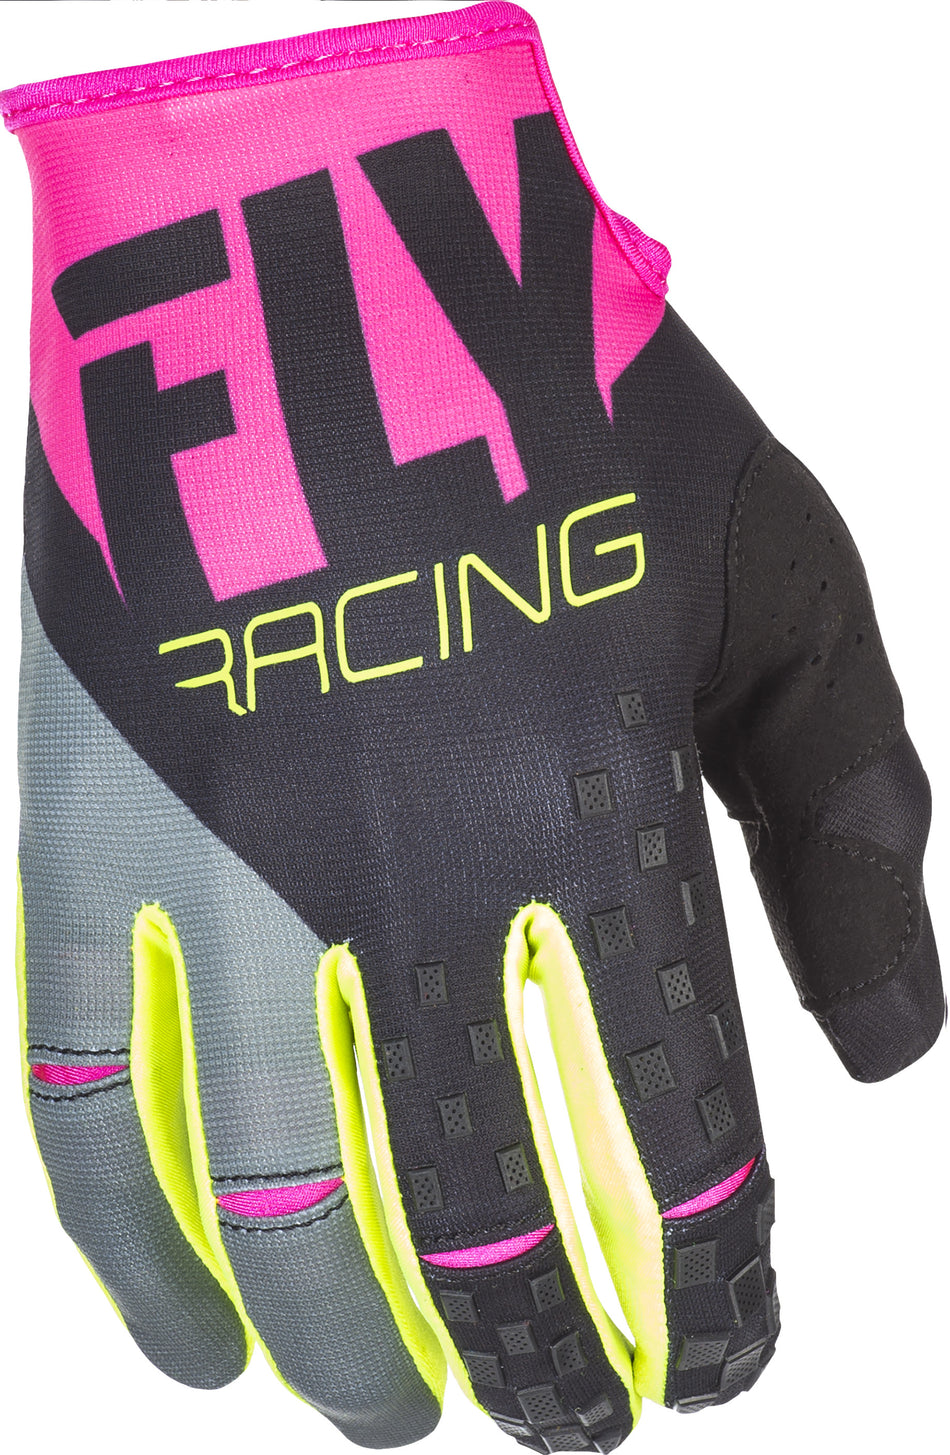 FLY RACING Kinetic Gloves Neon Pink/Black/Hi-Vis Sz 9 371-41909